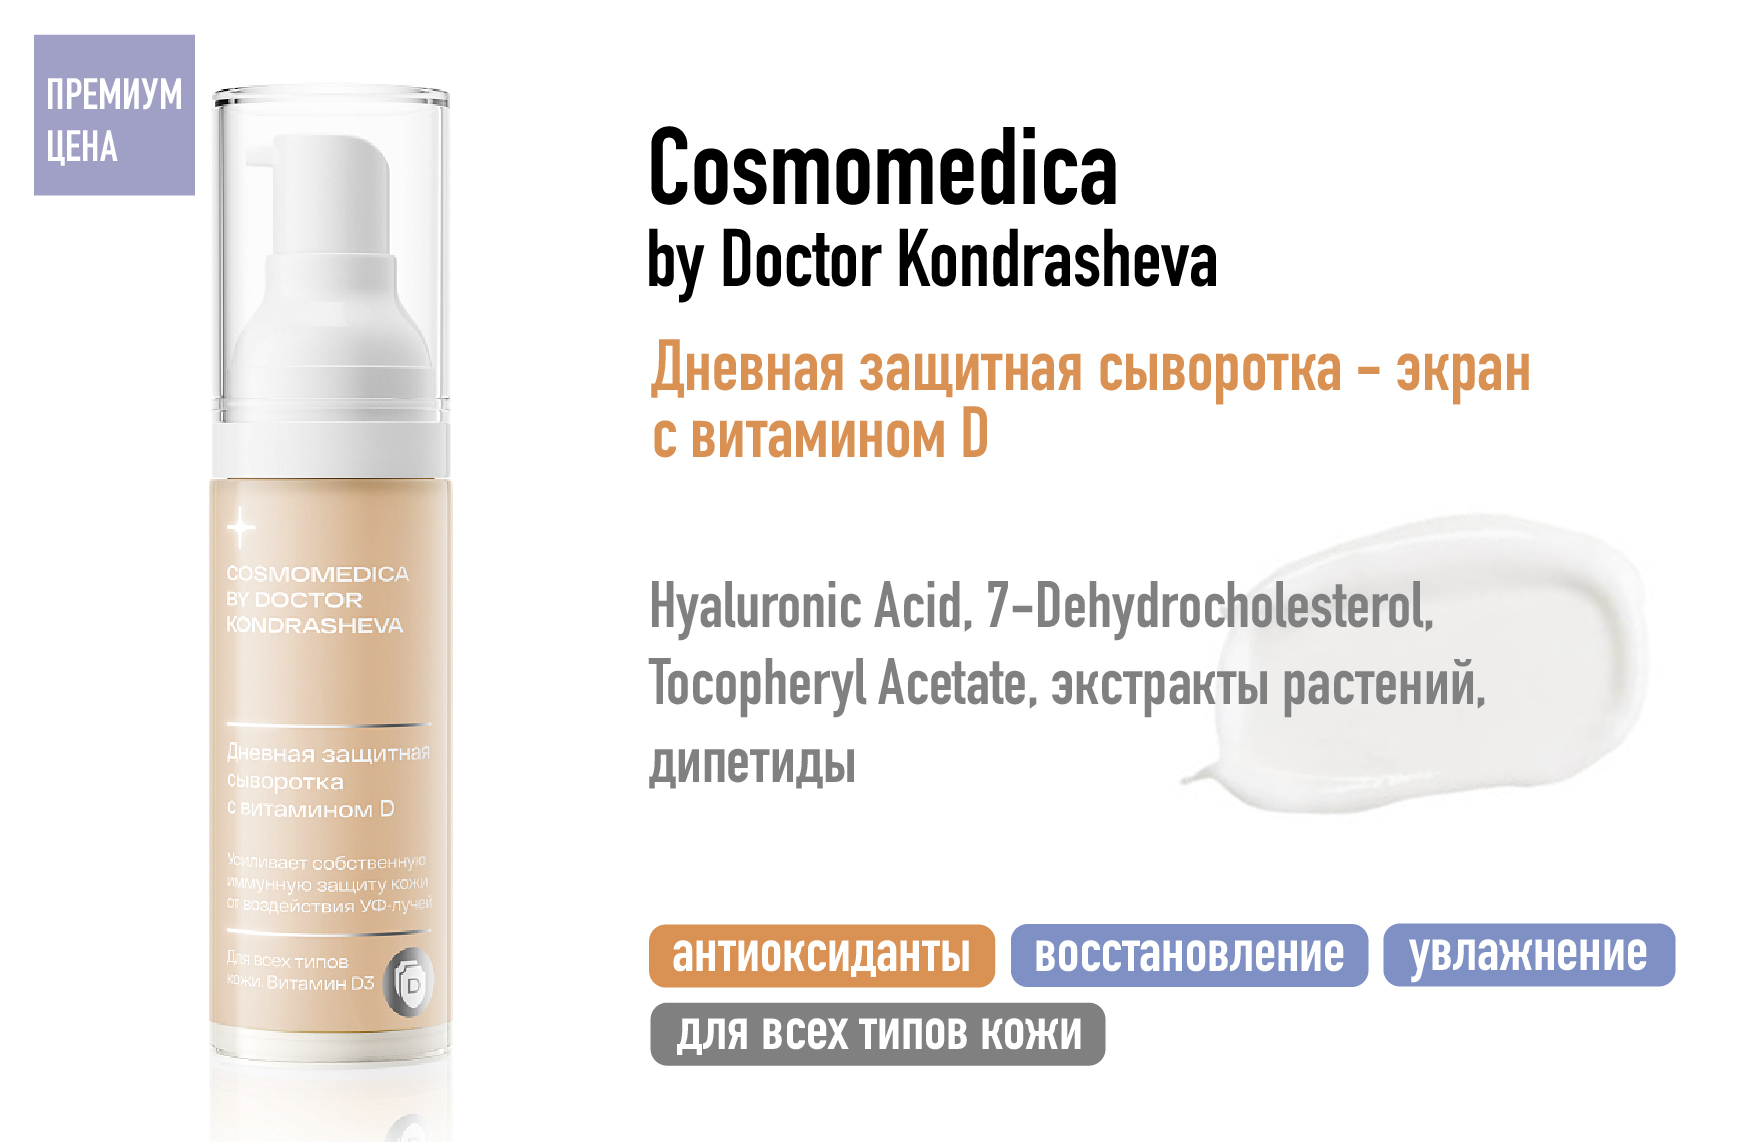 Сosmomedica by Doctor Kondrasheva / Дневная защитная сыворотка — экран с витамином D